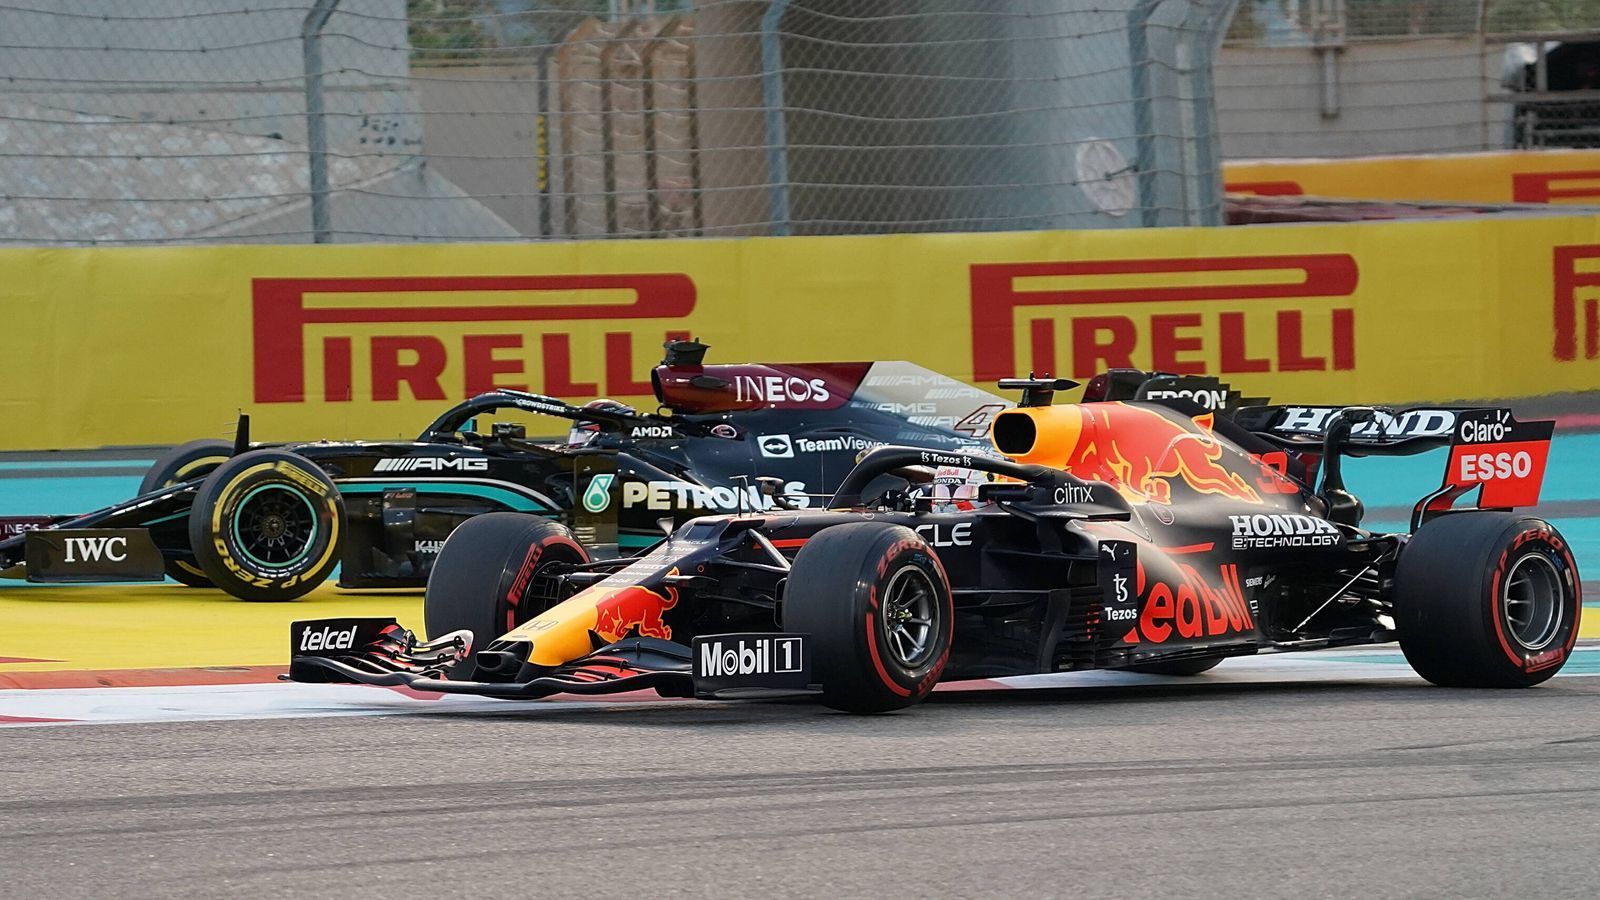 
                <strong>Showdown in Abu Dhabi: Vorteil Hamilton, Verstappen, Hamilton</strong><br>
                Und Verstappen und Hamilton halten auch in Abu Dhabi, was sie in der Saison versprachen. Im Training dominiert Hamilton, im Qualifying düpiert Verstappen dann seinen Widersacher, knallt eine Hammer-Runde in den Asphalt des Yas Marina Circuit. Hamilton kann nur staunen. Doch im Rennen nutzt er den verpatzten Start von Verstappen und setzt sich an die Spitze, lässt sich auch von einem frühen Angriff Verstappens nicht aus der Ruhe bringen. Alles sieht nach dem achten Titel des Briten aus, der wenige Runden vor Schluss zehn Sekunden Vorsprung hat.
              